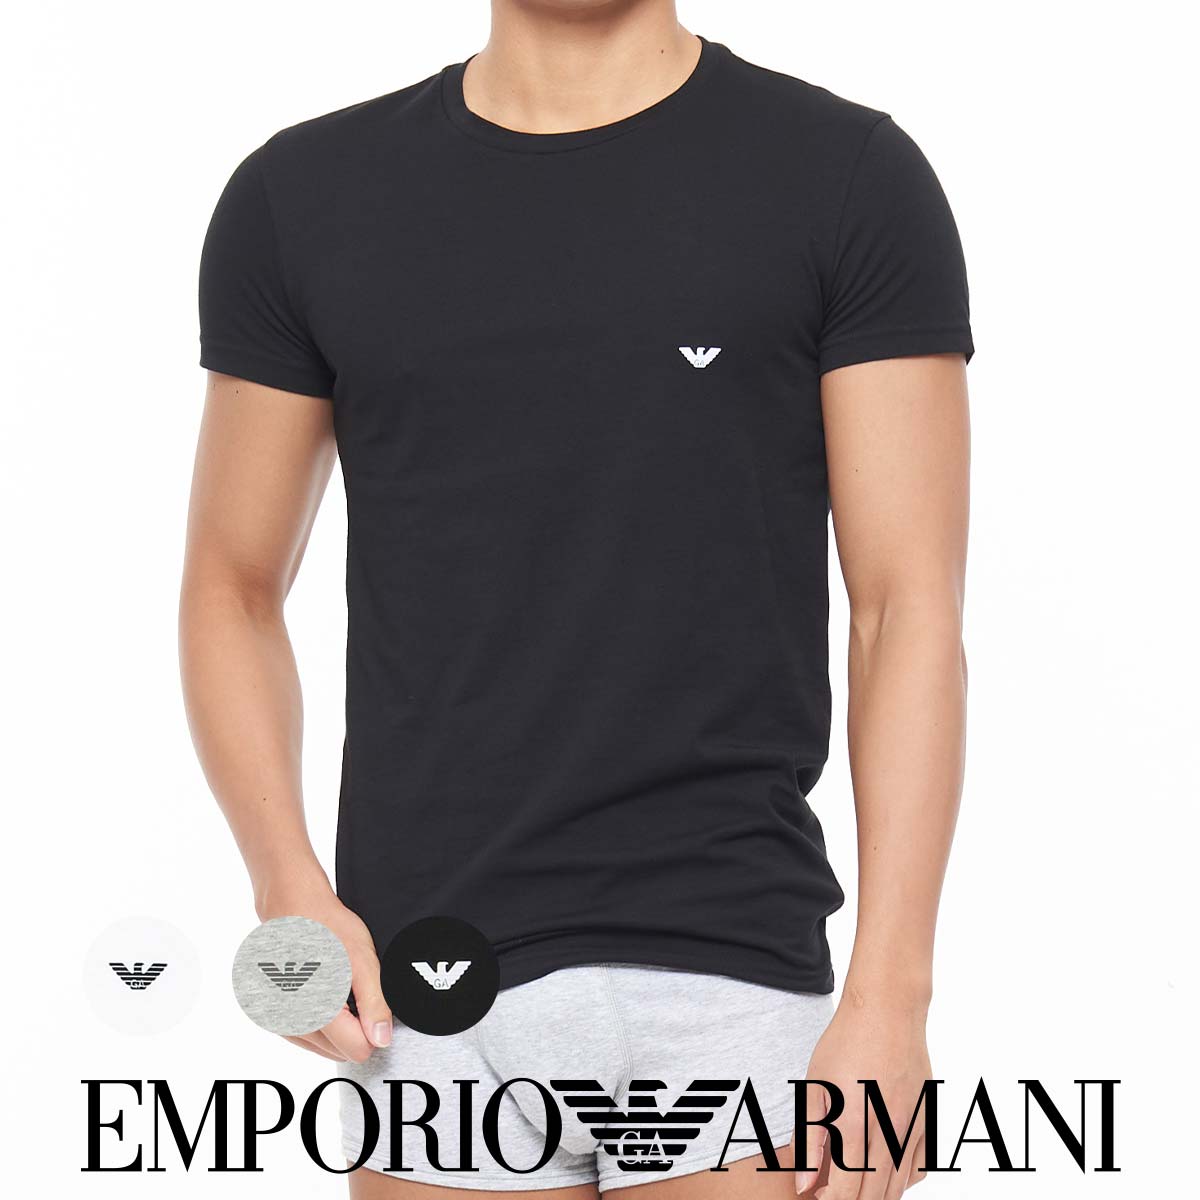 アヒルくん様専用新品未使用エンポリオアルマーニ tシャツ12A154cm